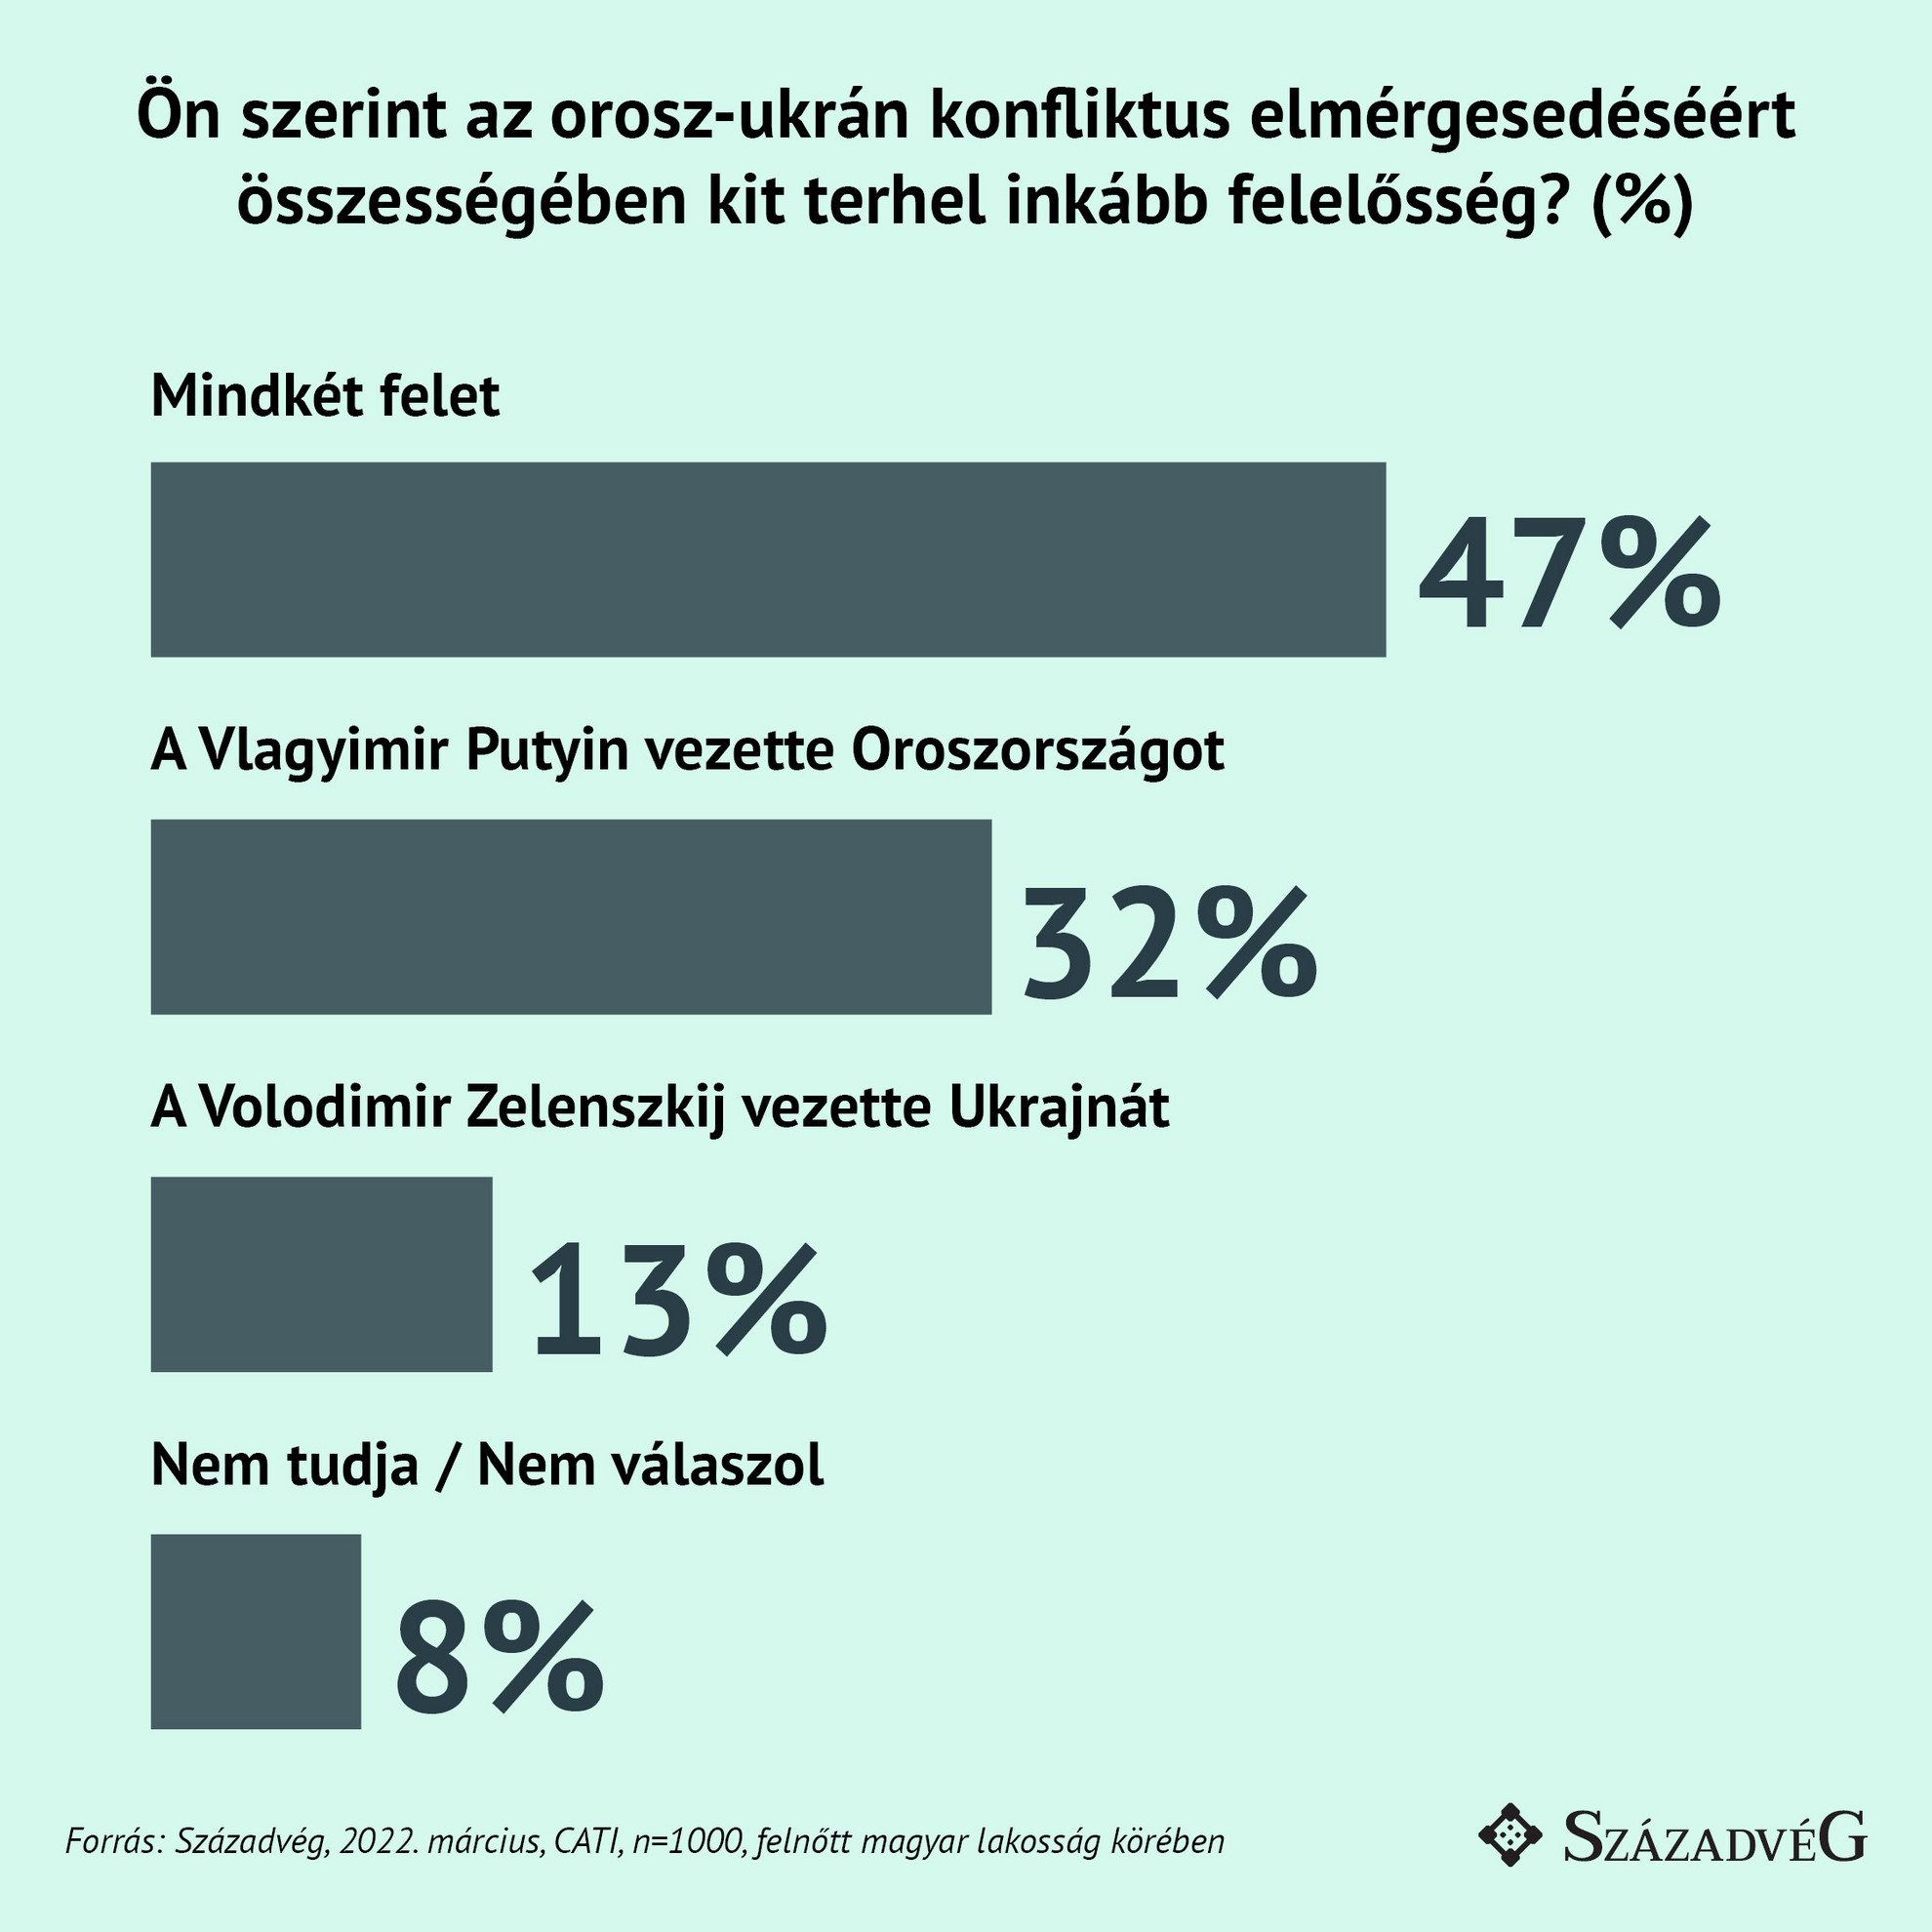 A magyarok 47 százaléka szerint mindkét felet felelősség terheli a konfliktus elmérgesedéséért